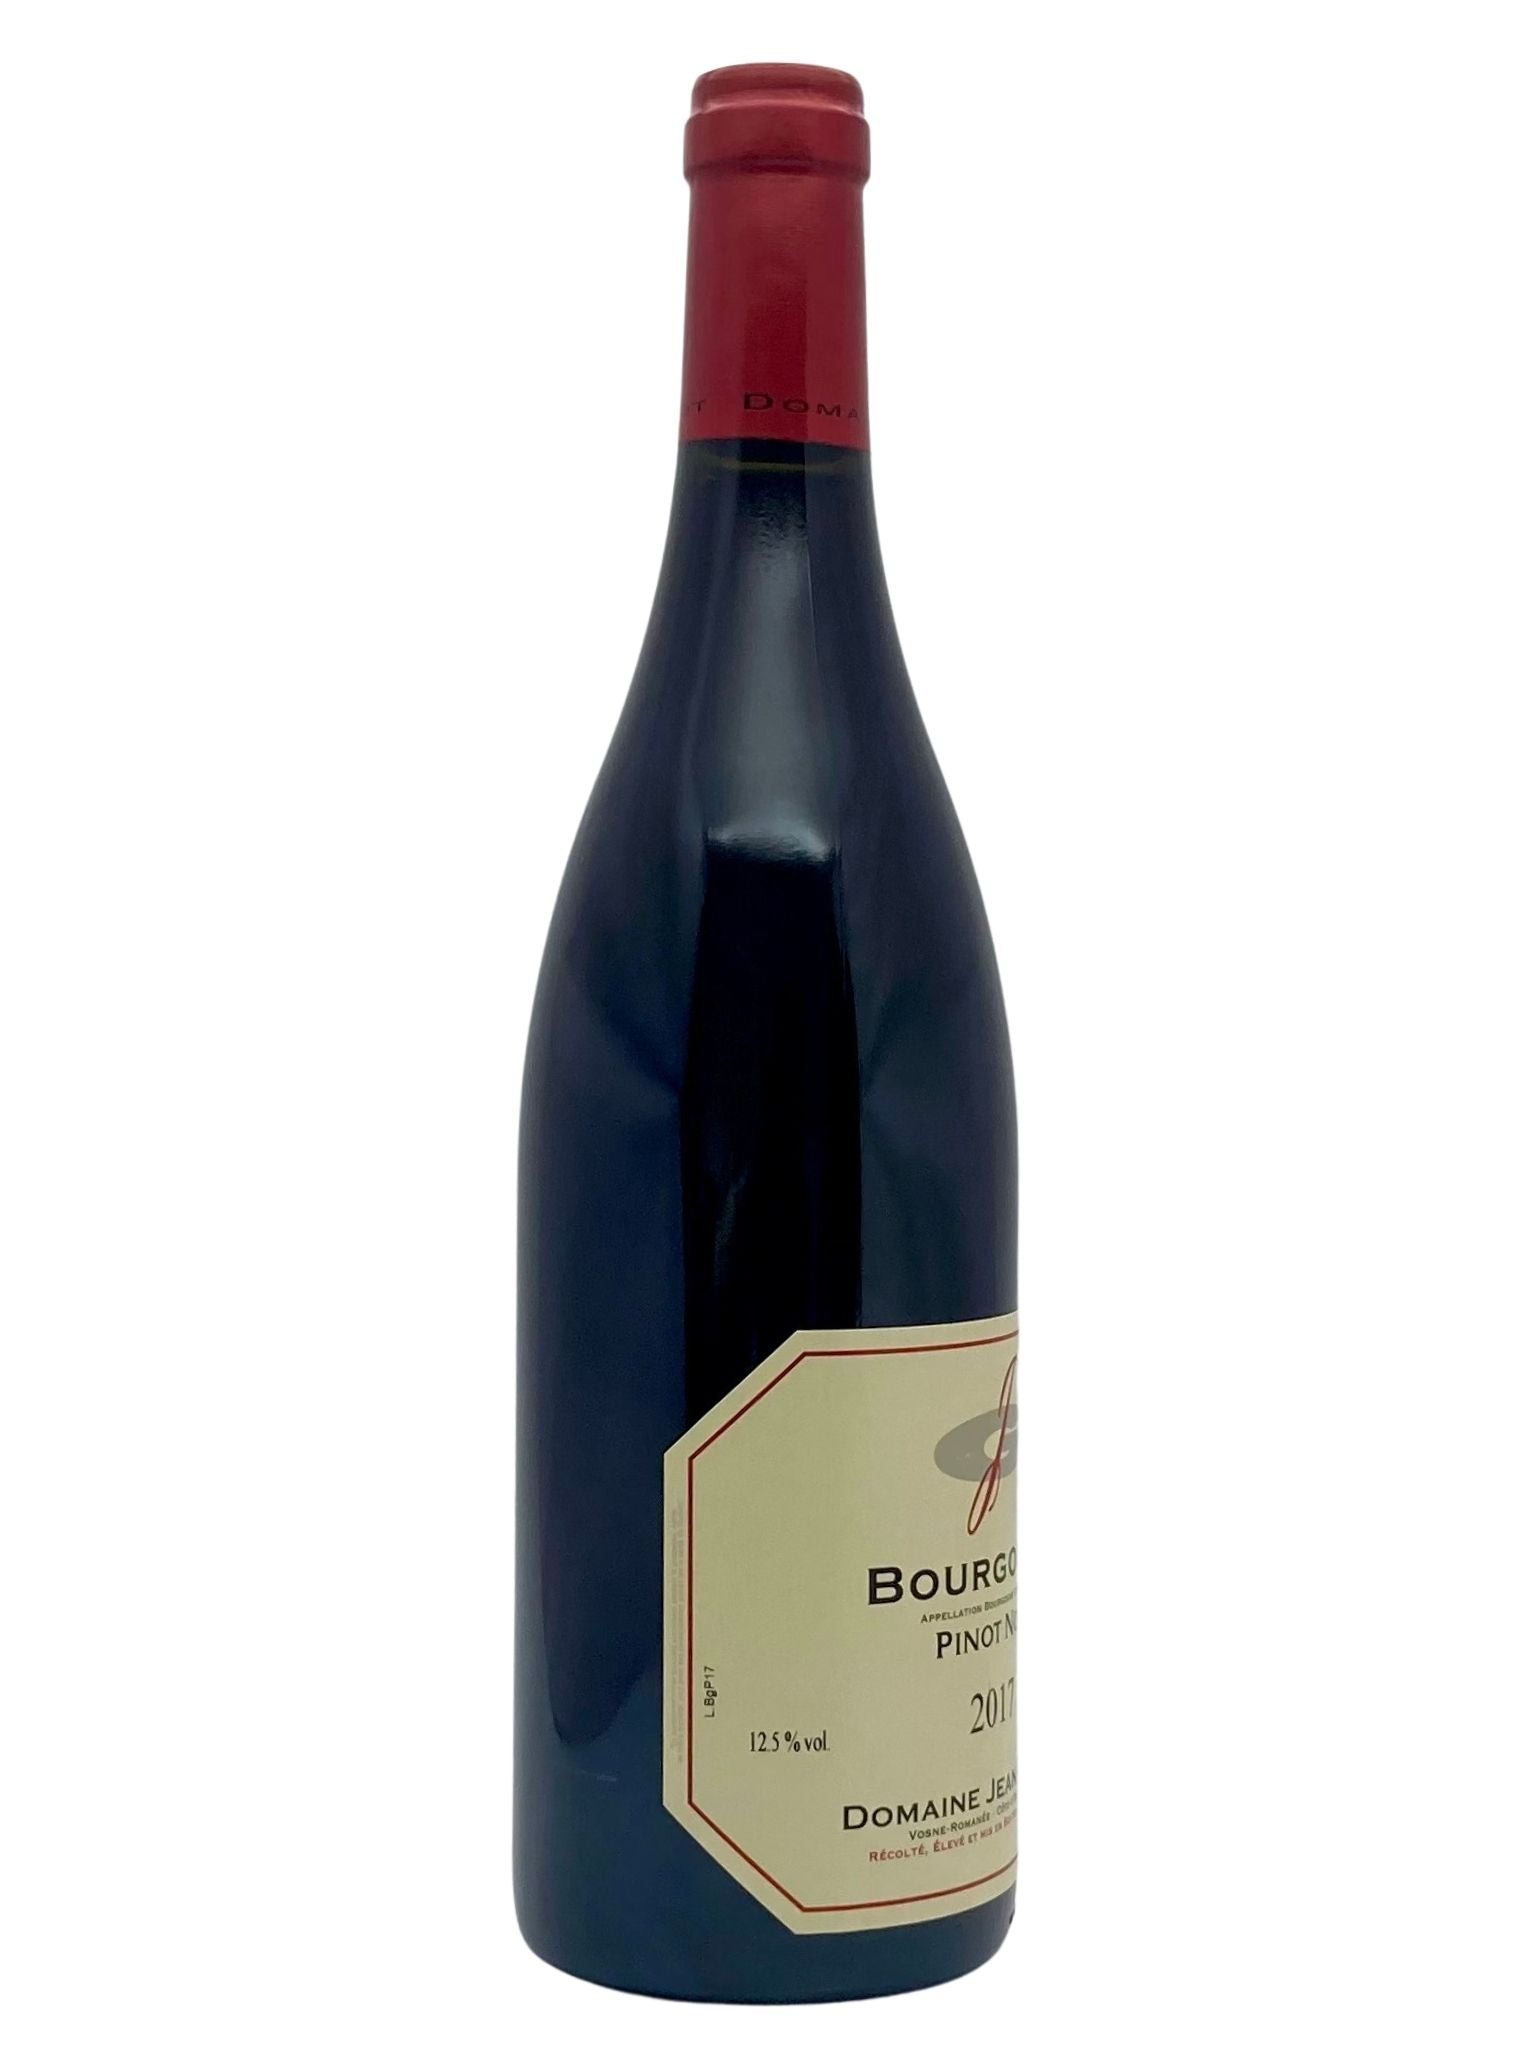 Bouteille Bourgogne Pinot Noir Grivot Jean Domaine 2017 left